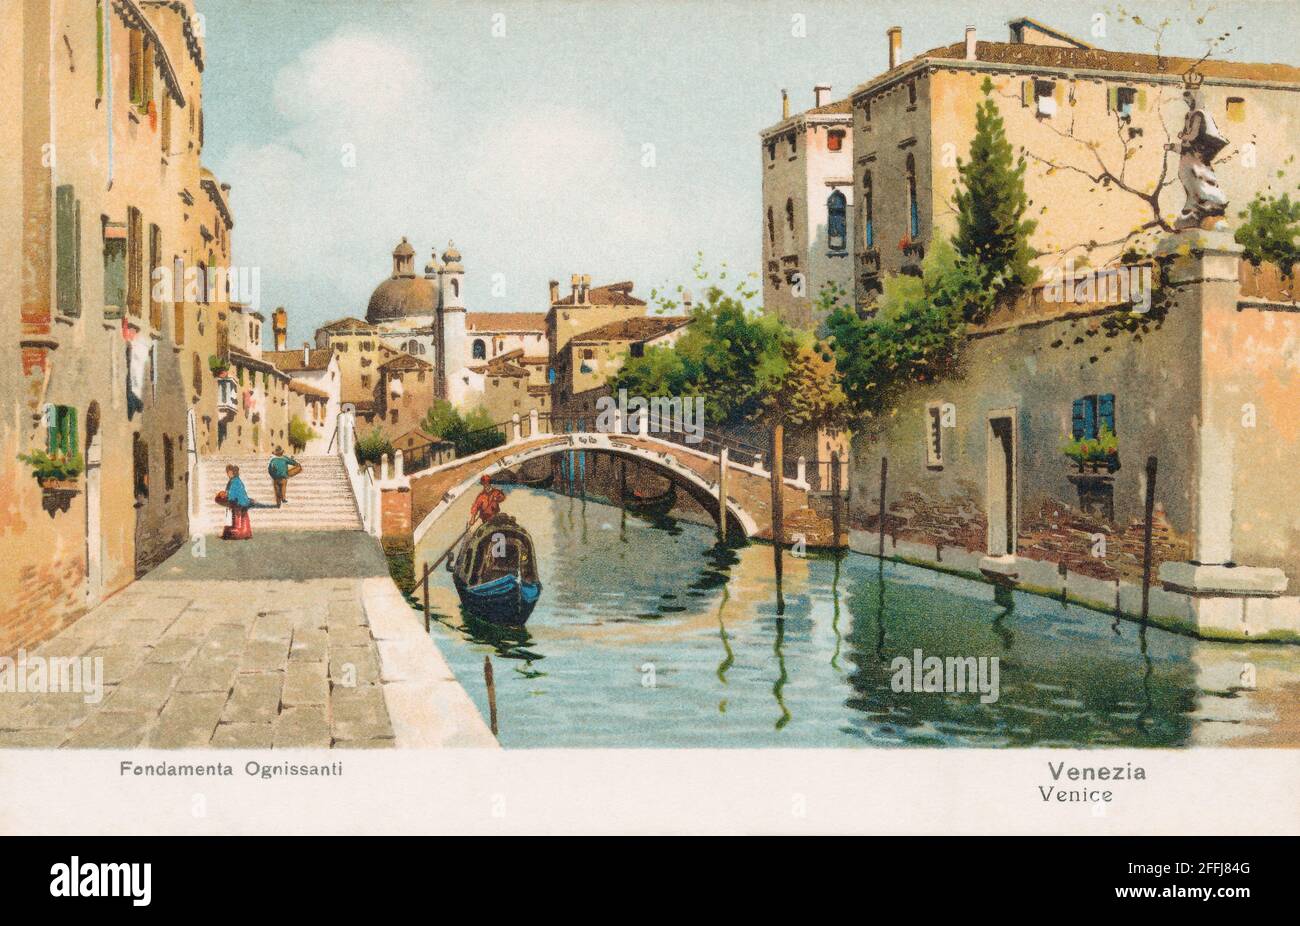 Cartolina italiana d'epoca dei Fondamenta Ognissanti e Rio del Ognissanti a Venezia. Foto Stock